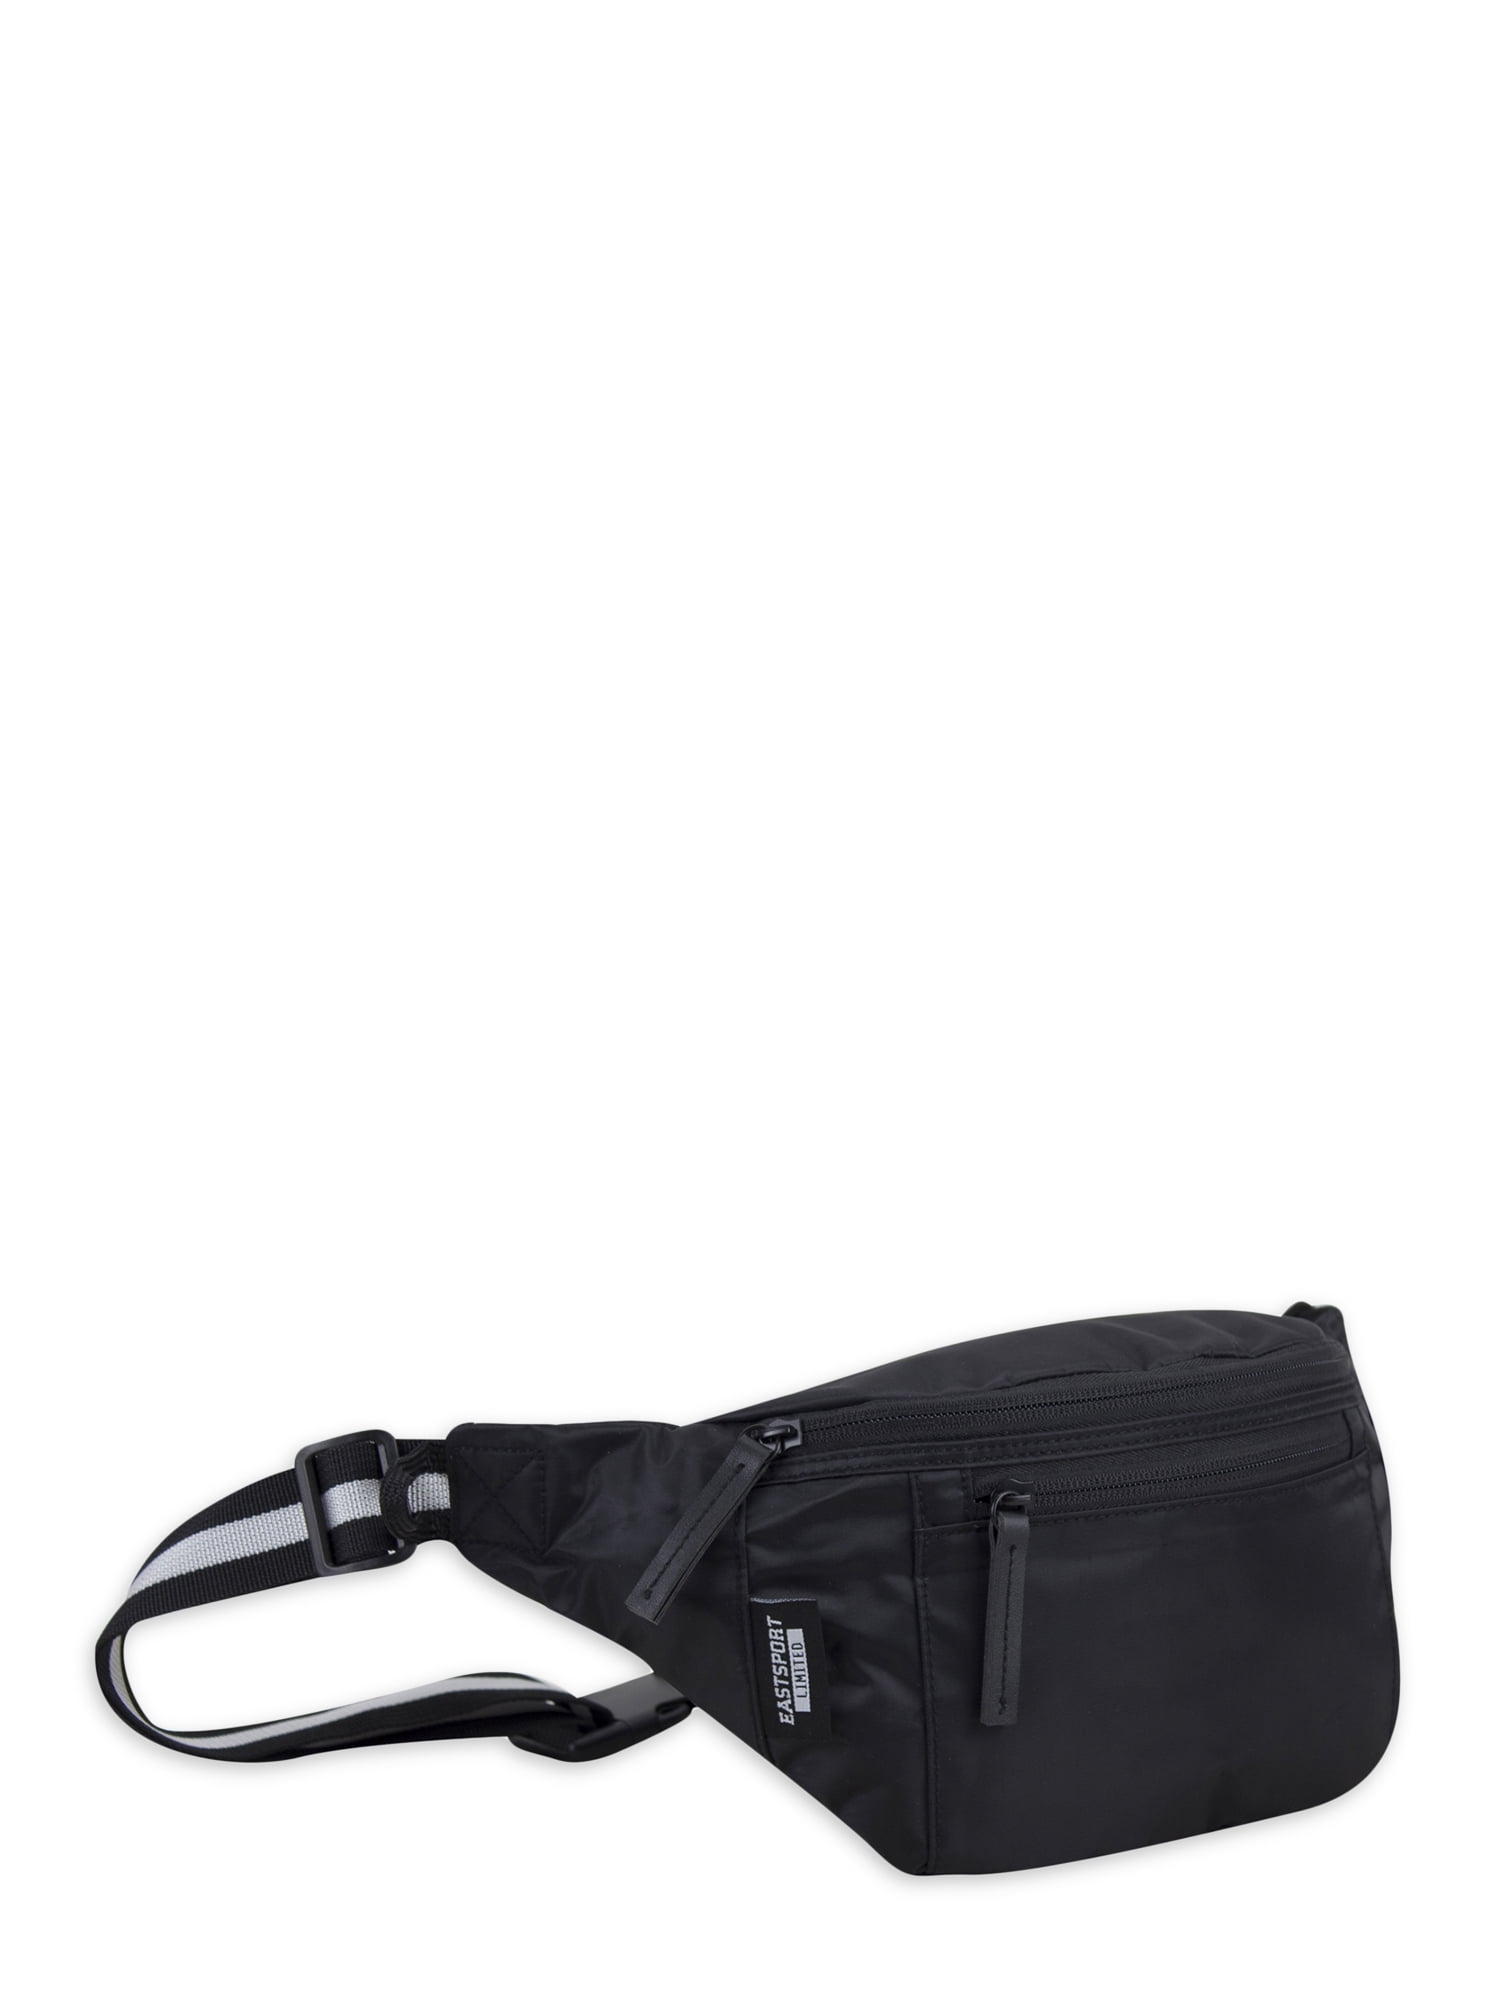 Shoulder Waist Belt Packs Fanny Pouch Unisex Kids PU Leather Chest Bags *DC